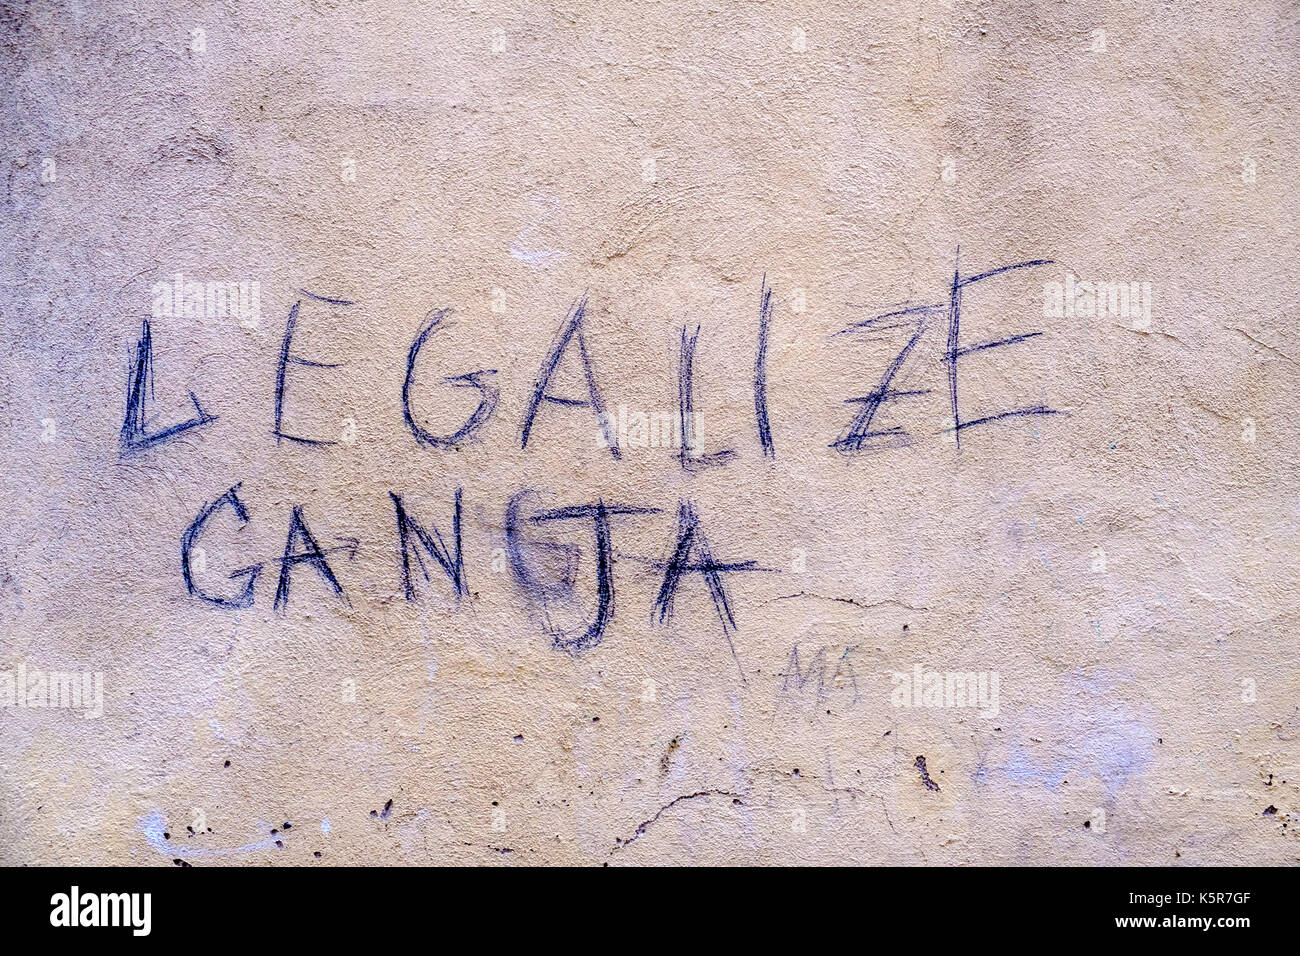 Legalisierung von Ganja, graffity für die Legalisierung von Marihuana an einer weißen Hauswand geschrieben Stockfoto